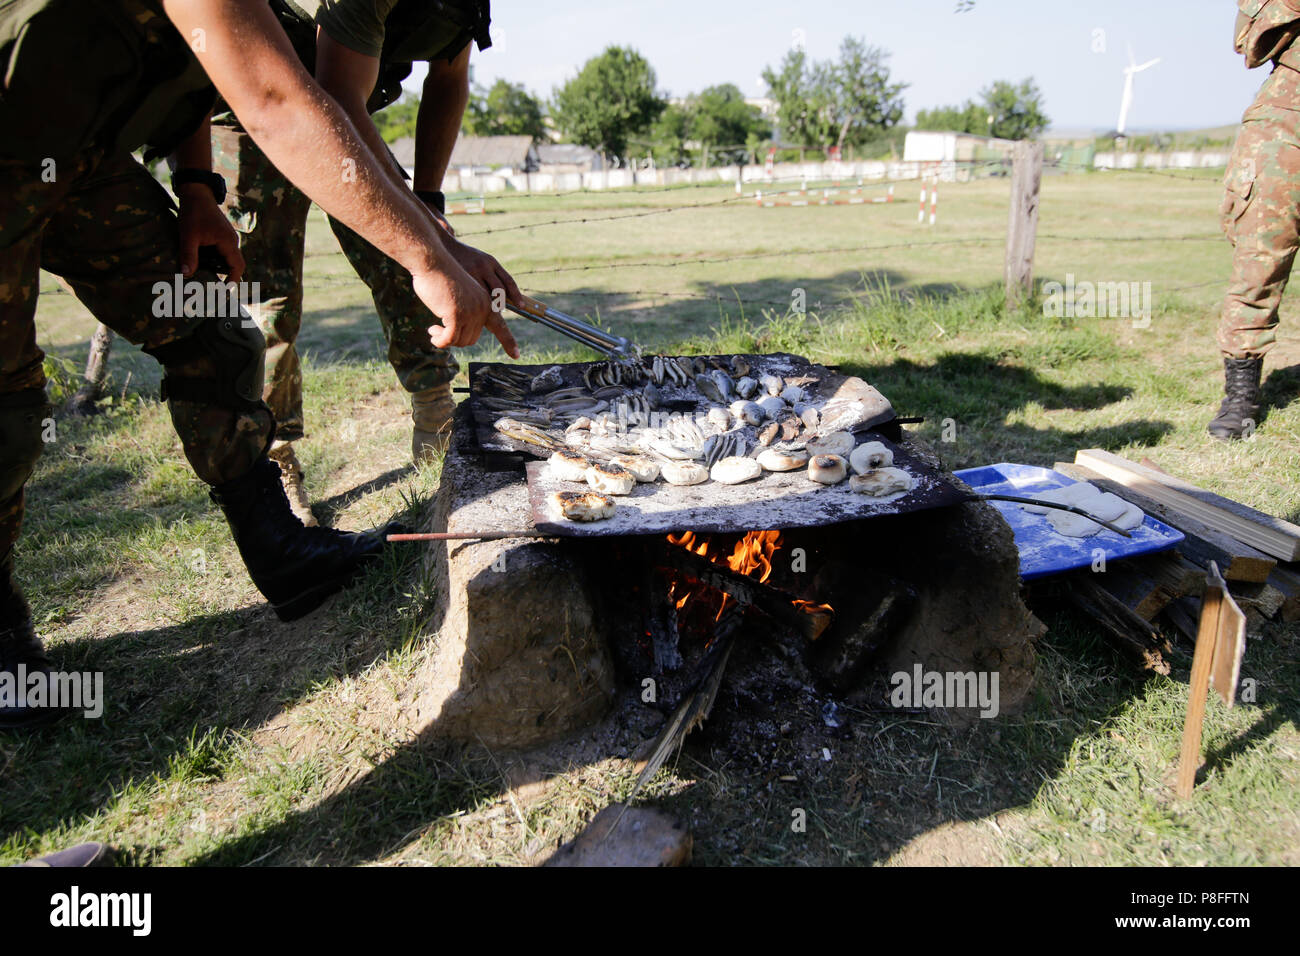 La préparation des soldats repas sur une grille à la main en bois ouverte sur le feu, à un camp de survie. Ils cuisent des serpents d'eau, les poissons, les grenouilles et le pain. Banque D'Images